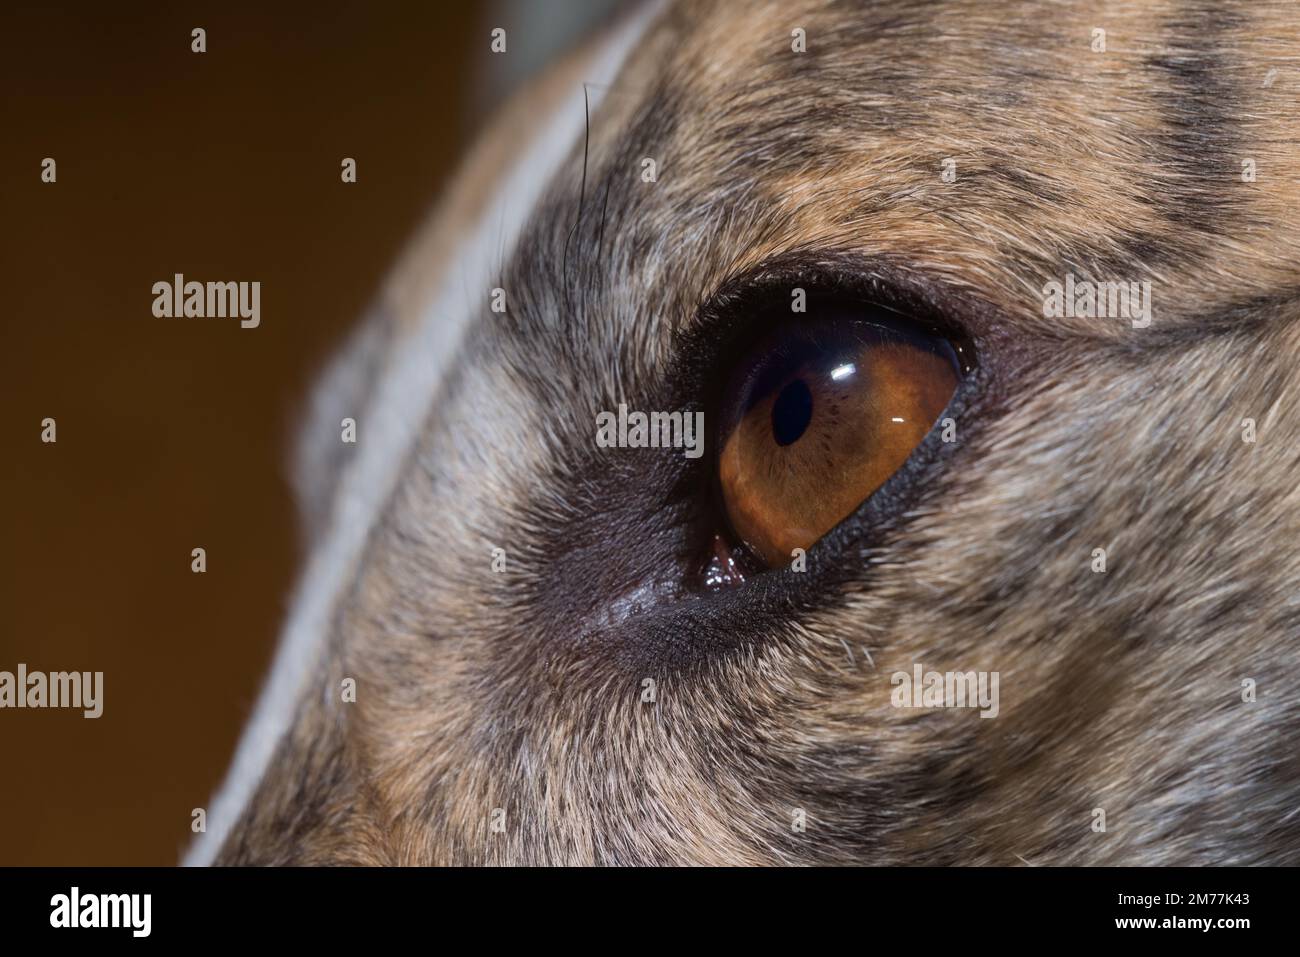 Particolare dell'iride bruno ricco dell'occhio dei greyhounds mostrato. Sono visibili elementi anatomici quali cripte, solchi radiali, cimelio pigmentato, area pupilaria e area ciliare Foto Stock